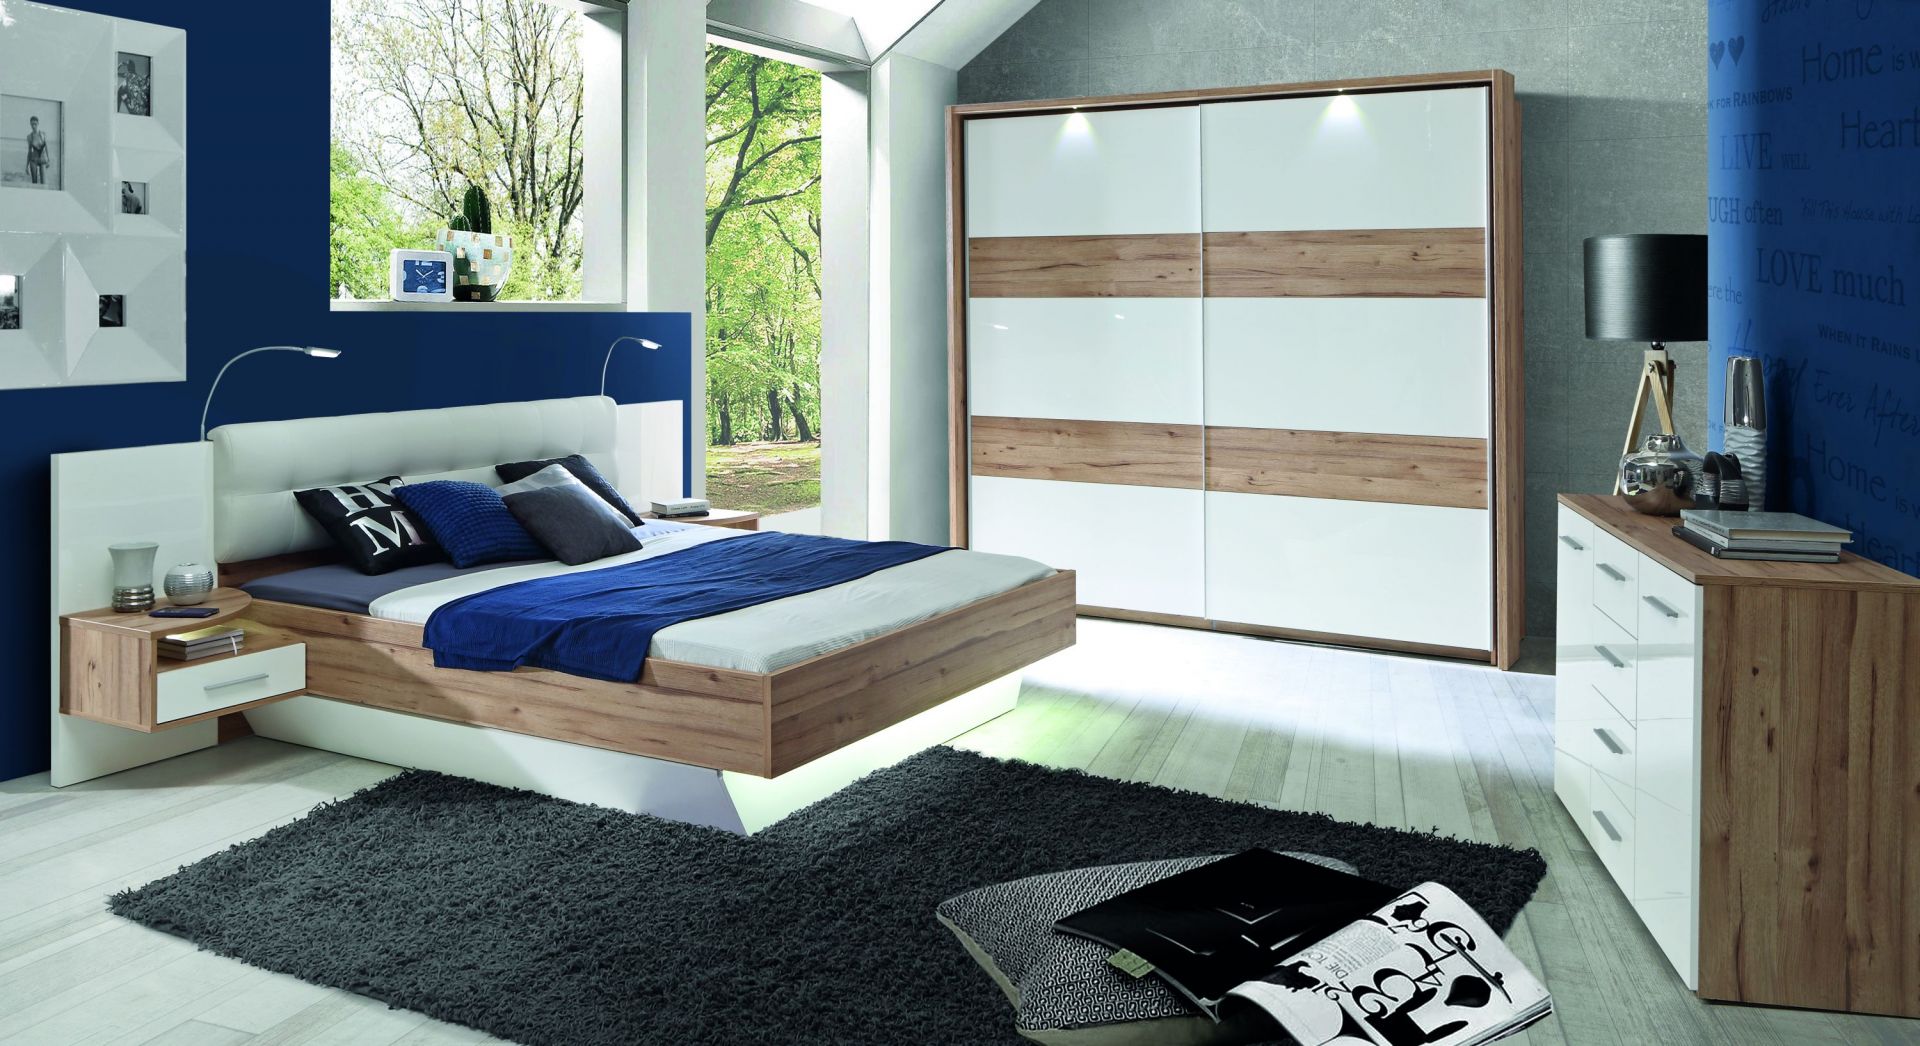 Meble z kolekcji Corsica mają półki nocne wbudowane w panel łóżka. Fot. Forte